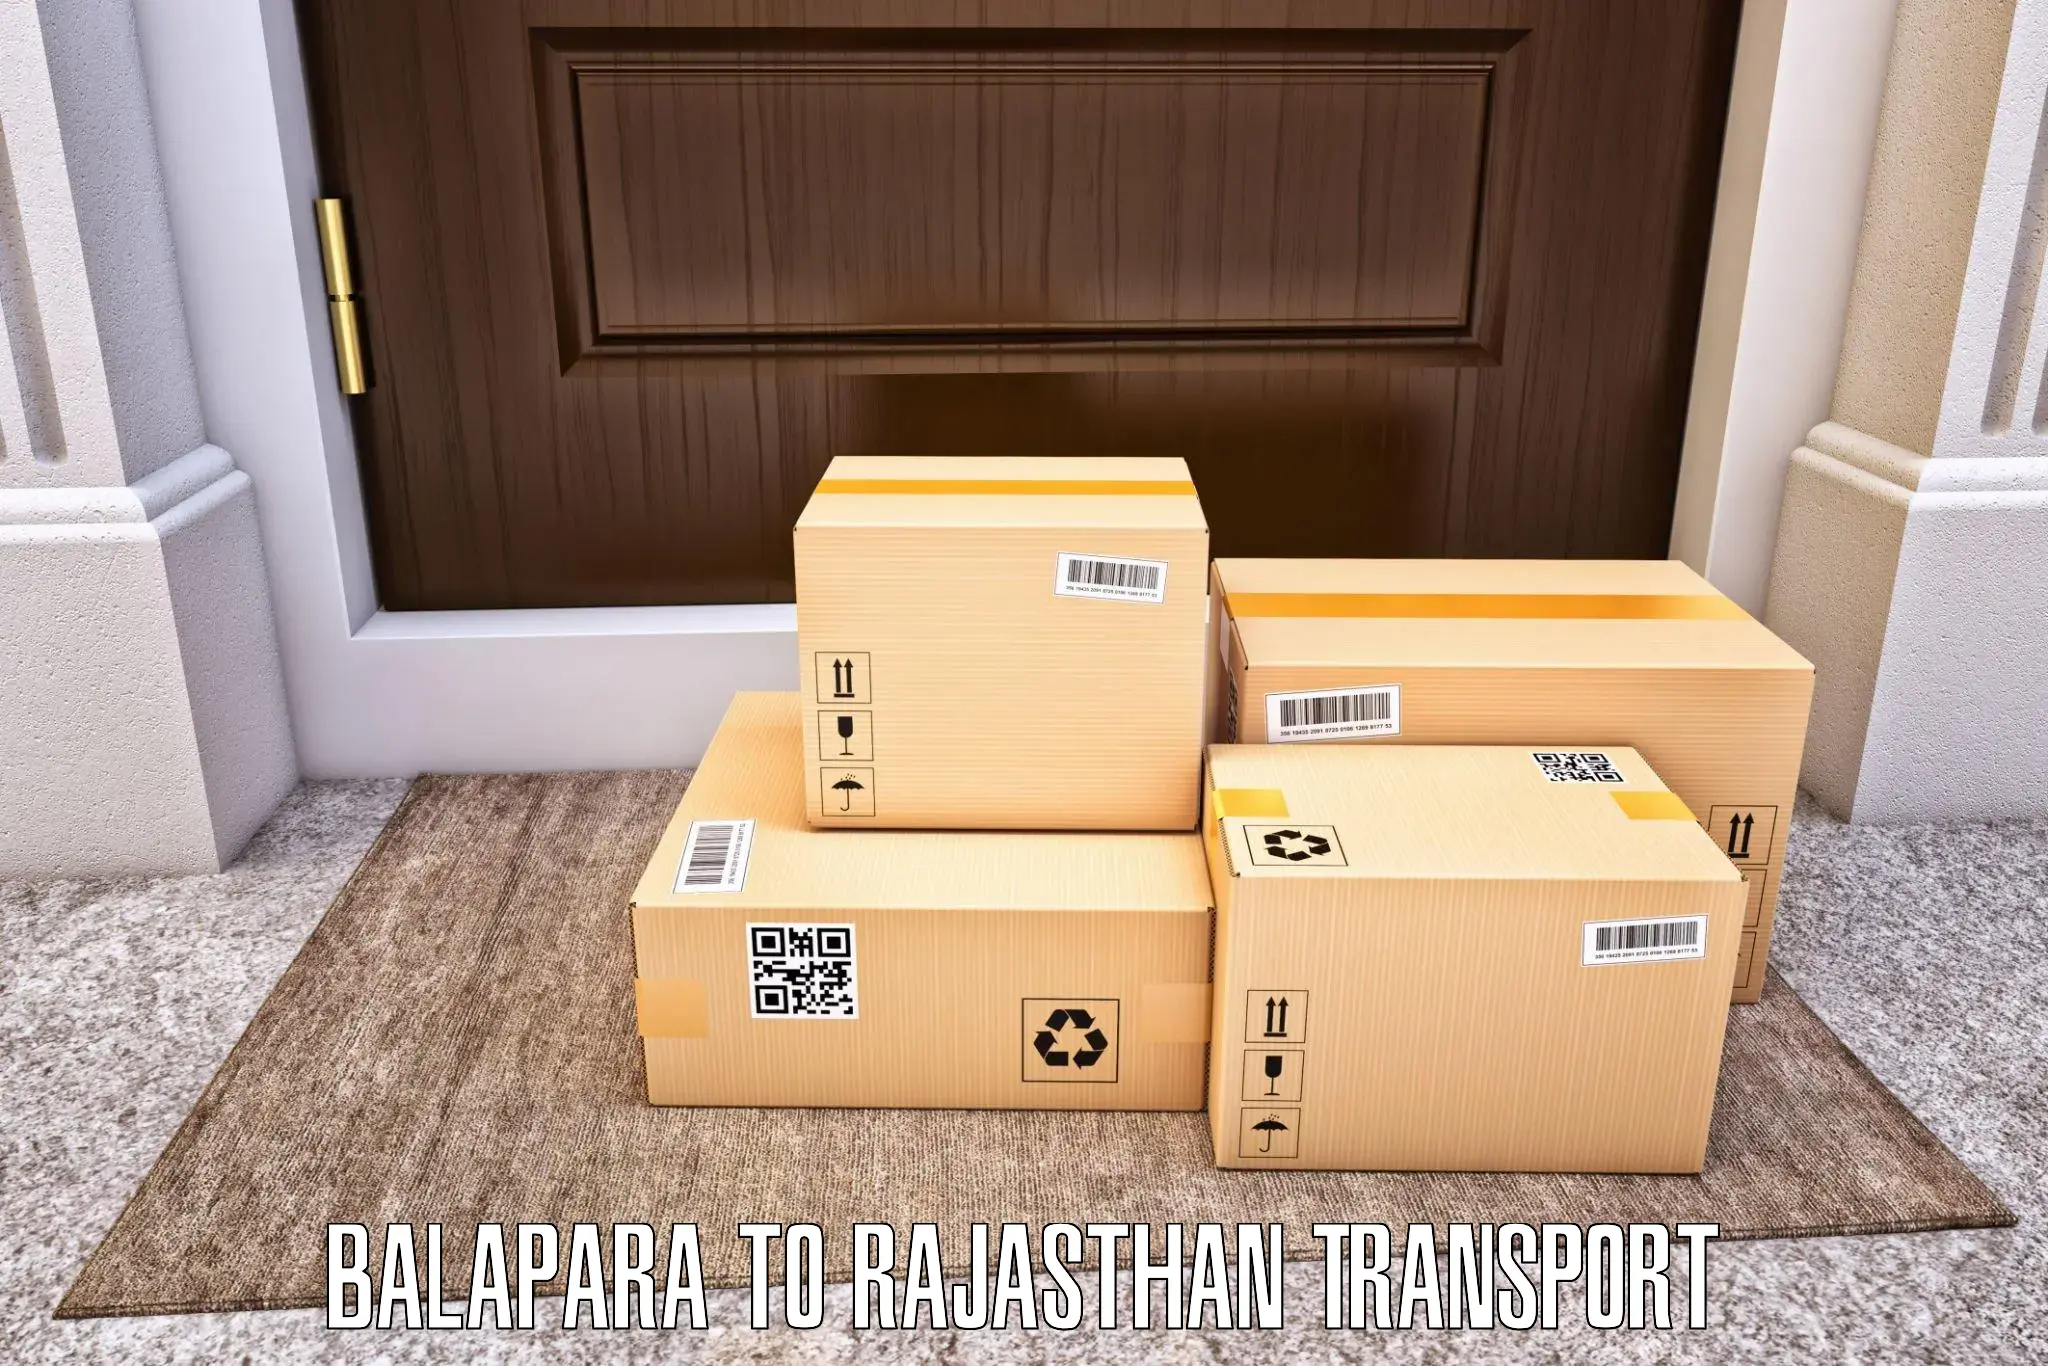 Furniture transport service Balapara to Rawatsar